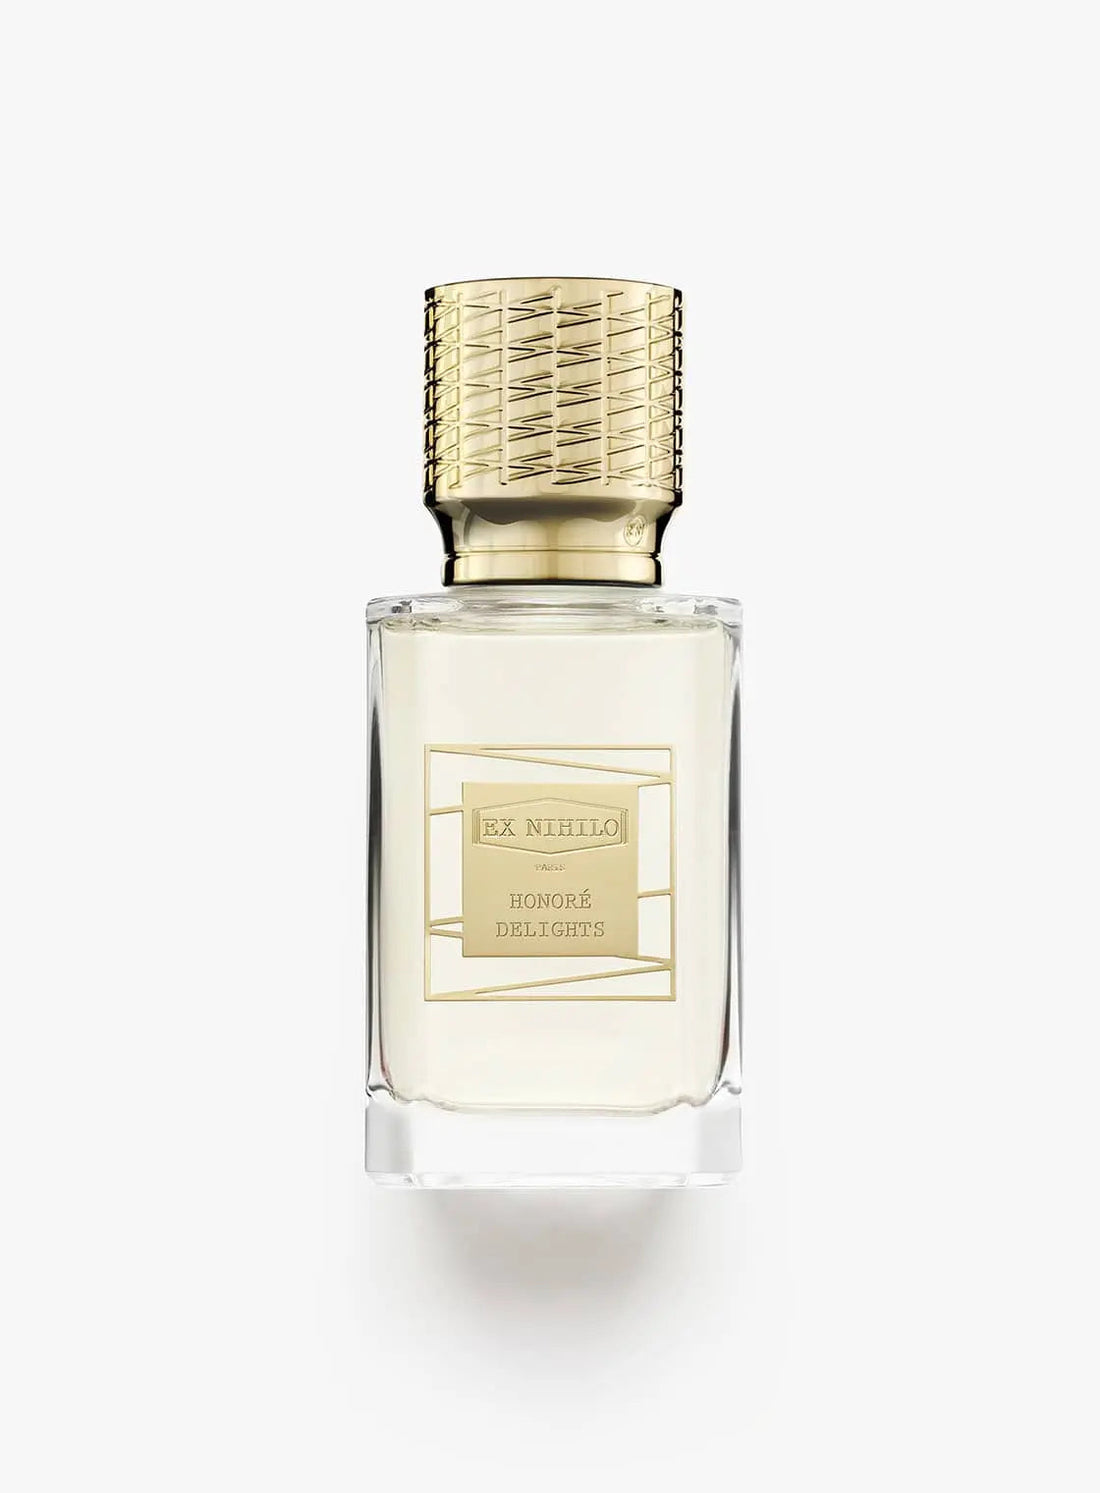 Ex nihilo Honorè Délices eau de parfum - 50 ml